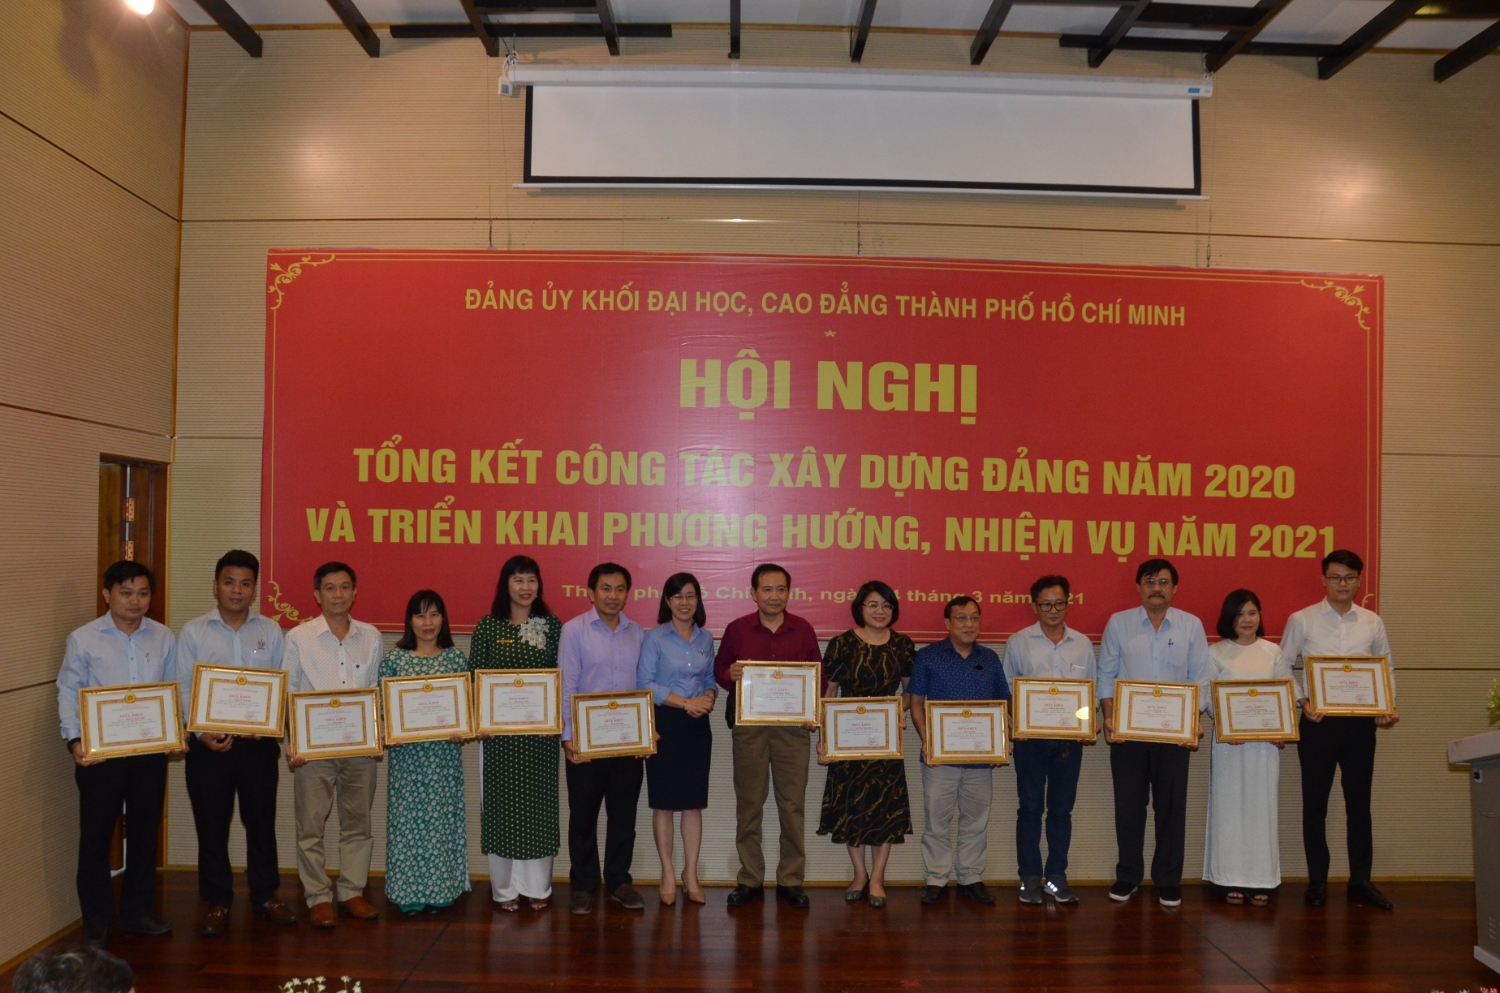 3.	Đồng chí Nguyễn Thị Là – Phó Bí thư Thường trực Đảng ủy Khối tặng 13 đảng viên hoàn thành xuất sắc nhiệm vụ 5 năm liền (2016-2020)